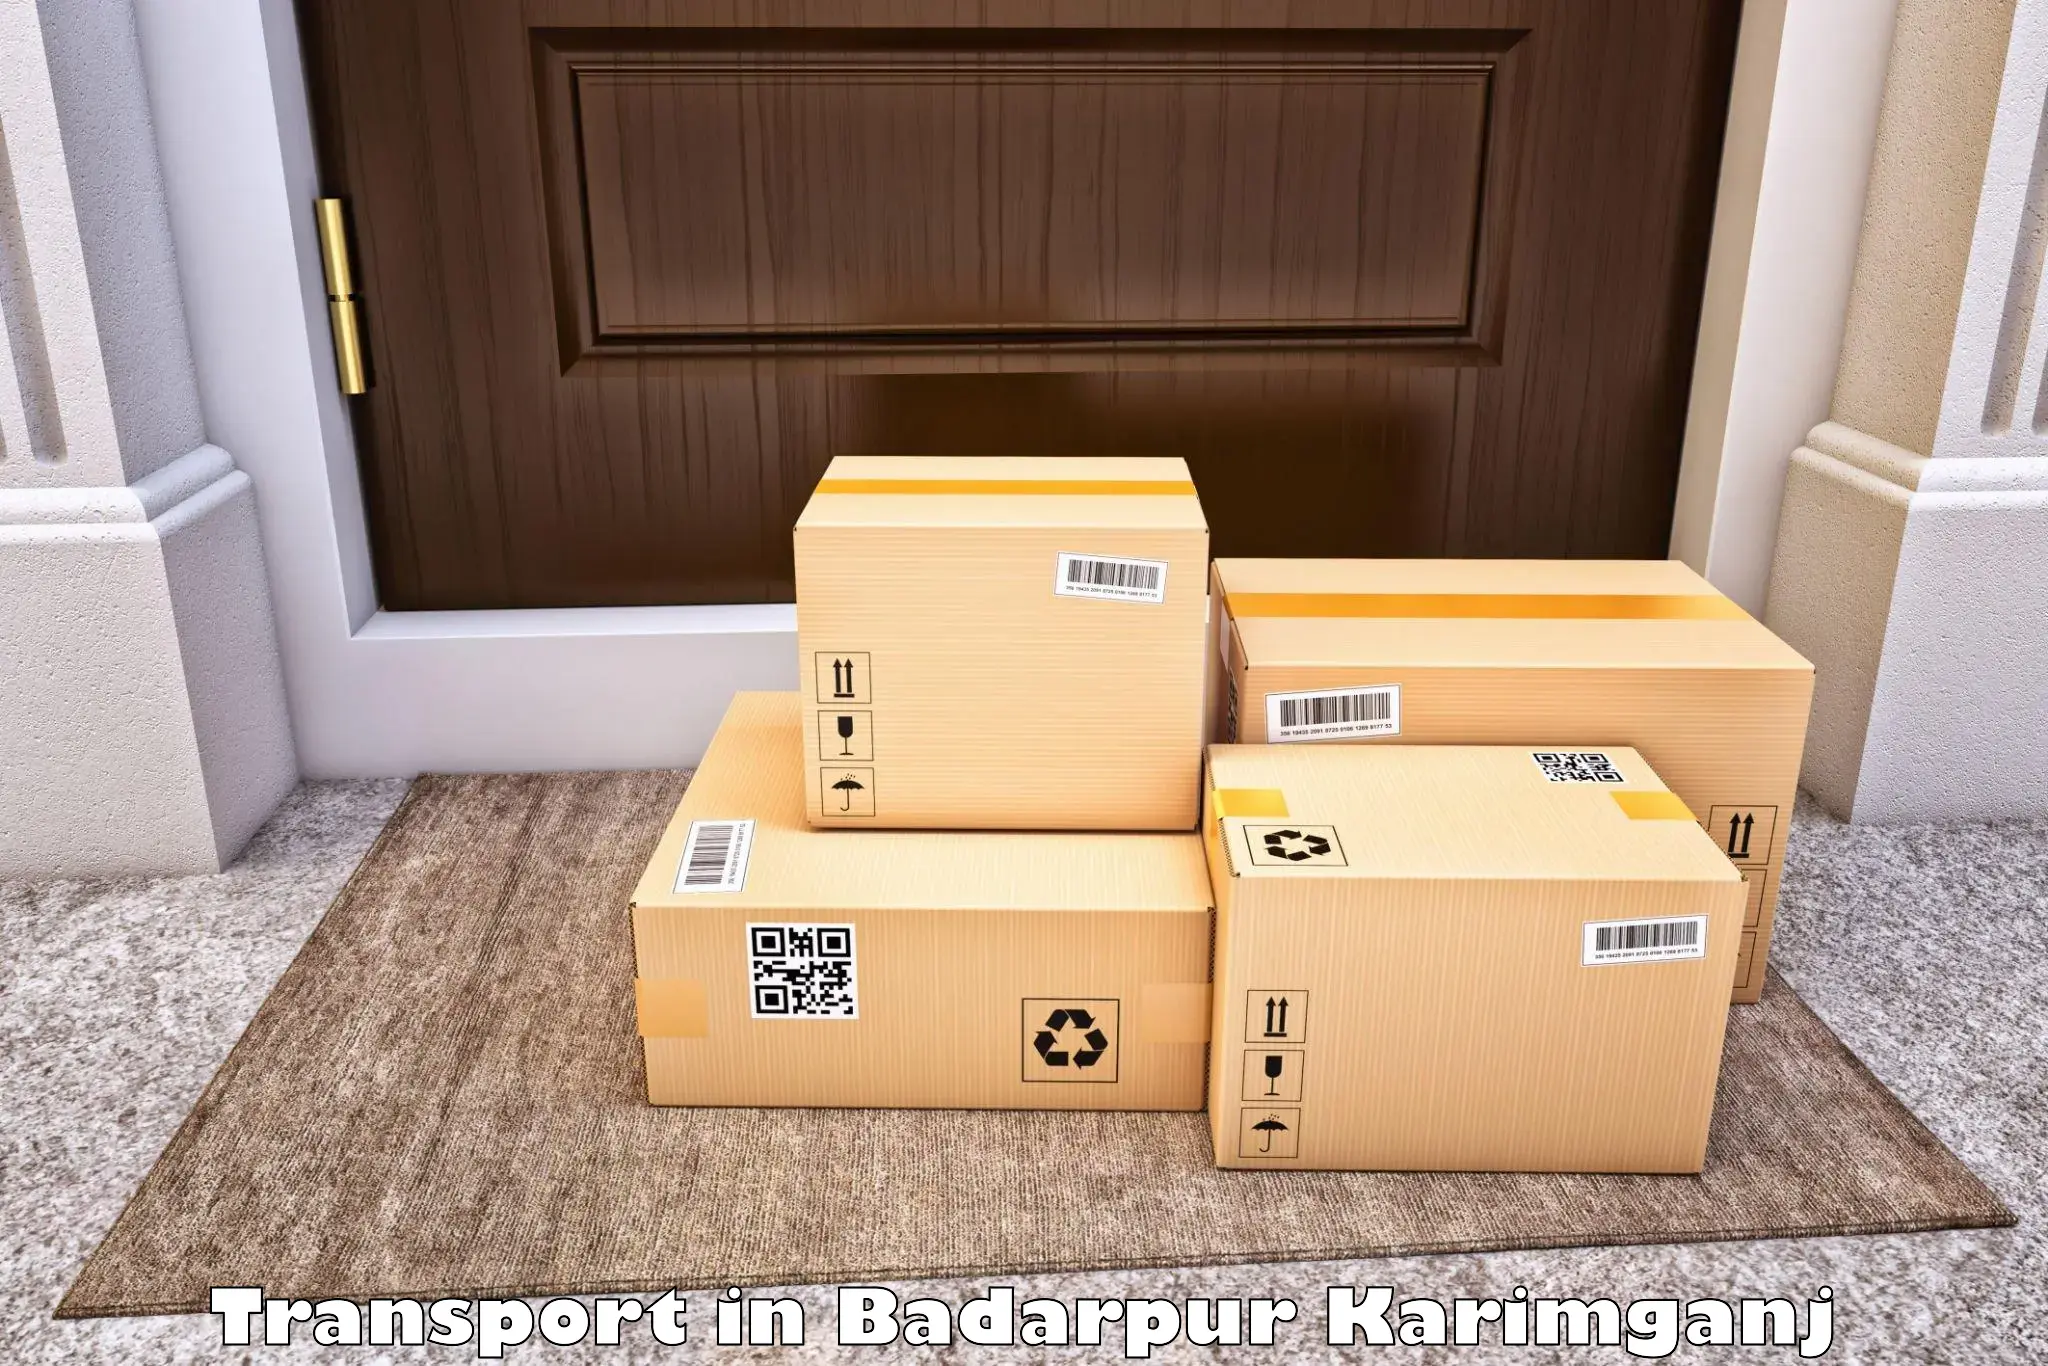 Daily parcel service transport in Badarpur Karimganj